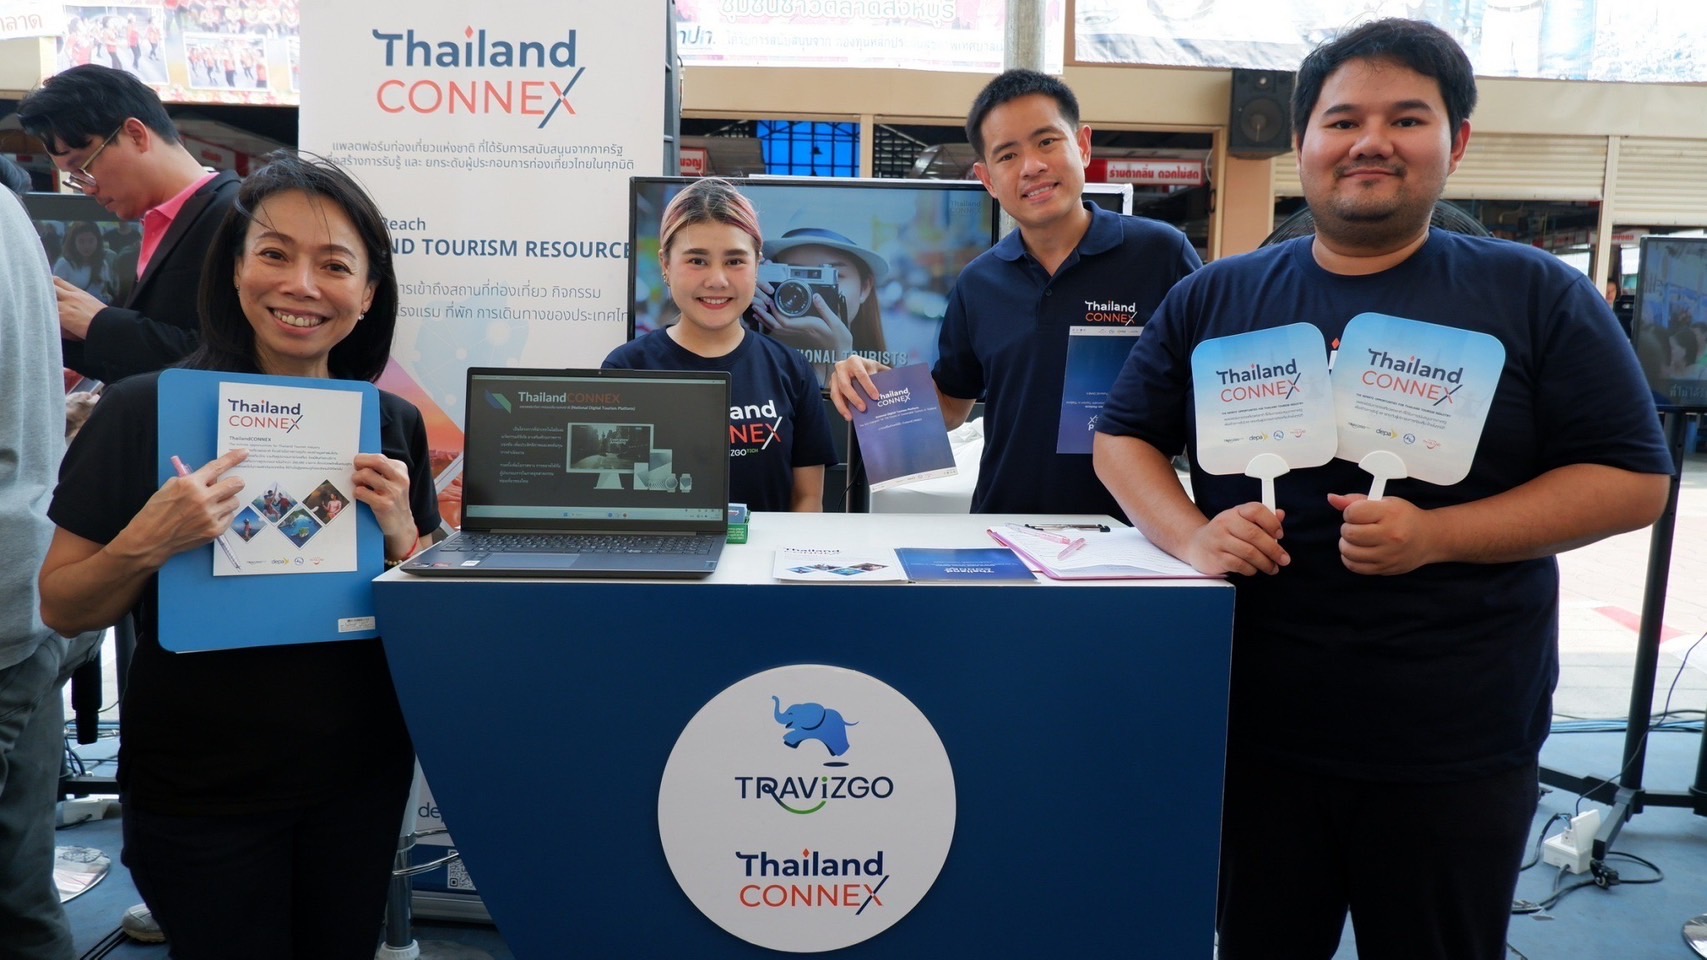 ThailandCONNEX แพลตฟอร์มท่องเที่ยวแห่งชาติ รุกสิงห์บุรี เข้าร่วมงาน Transform ตลาดสดยุควิถีใหม่  ร่วมสร้างระบบนิเวศน์ทางการท่องเที่ยว พลิกฟื้นอุตสาหกรรมท่องเที่ยวไทยด้วยดิจิทัลเทคโนโลยี